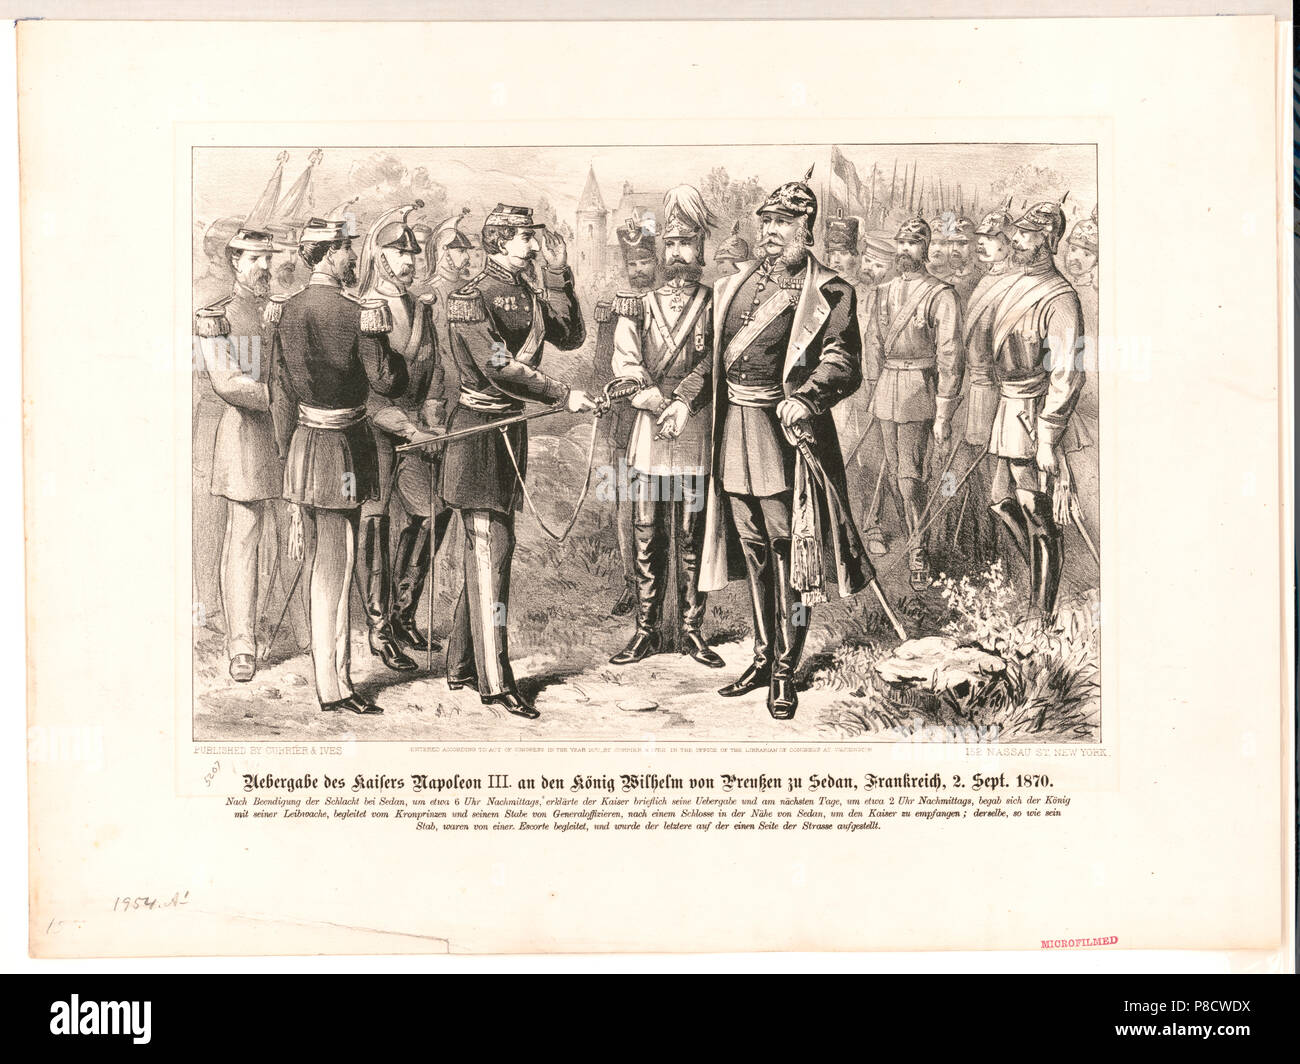 Uebergabe des Kaisers Napolean III, an den König Wilhelm von Preussen zu Sedan, Frankreich, 2. Sept. 1870 Stock Photo